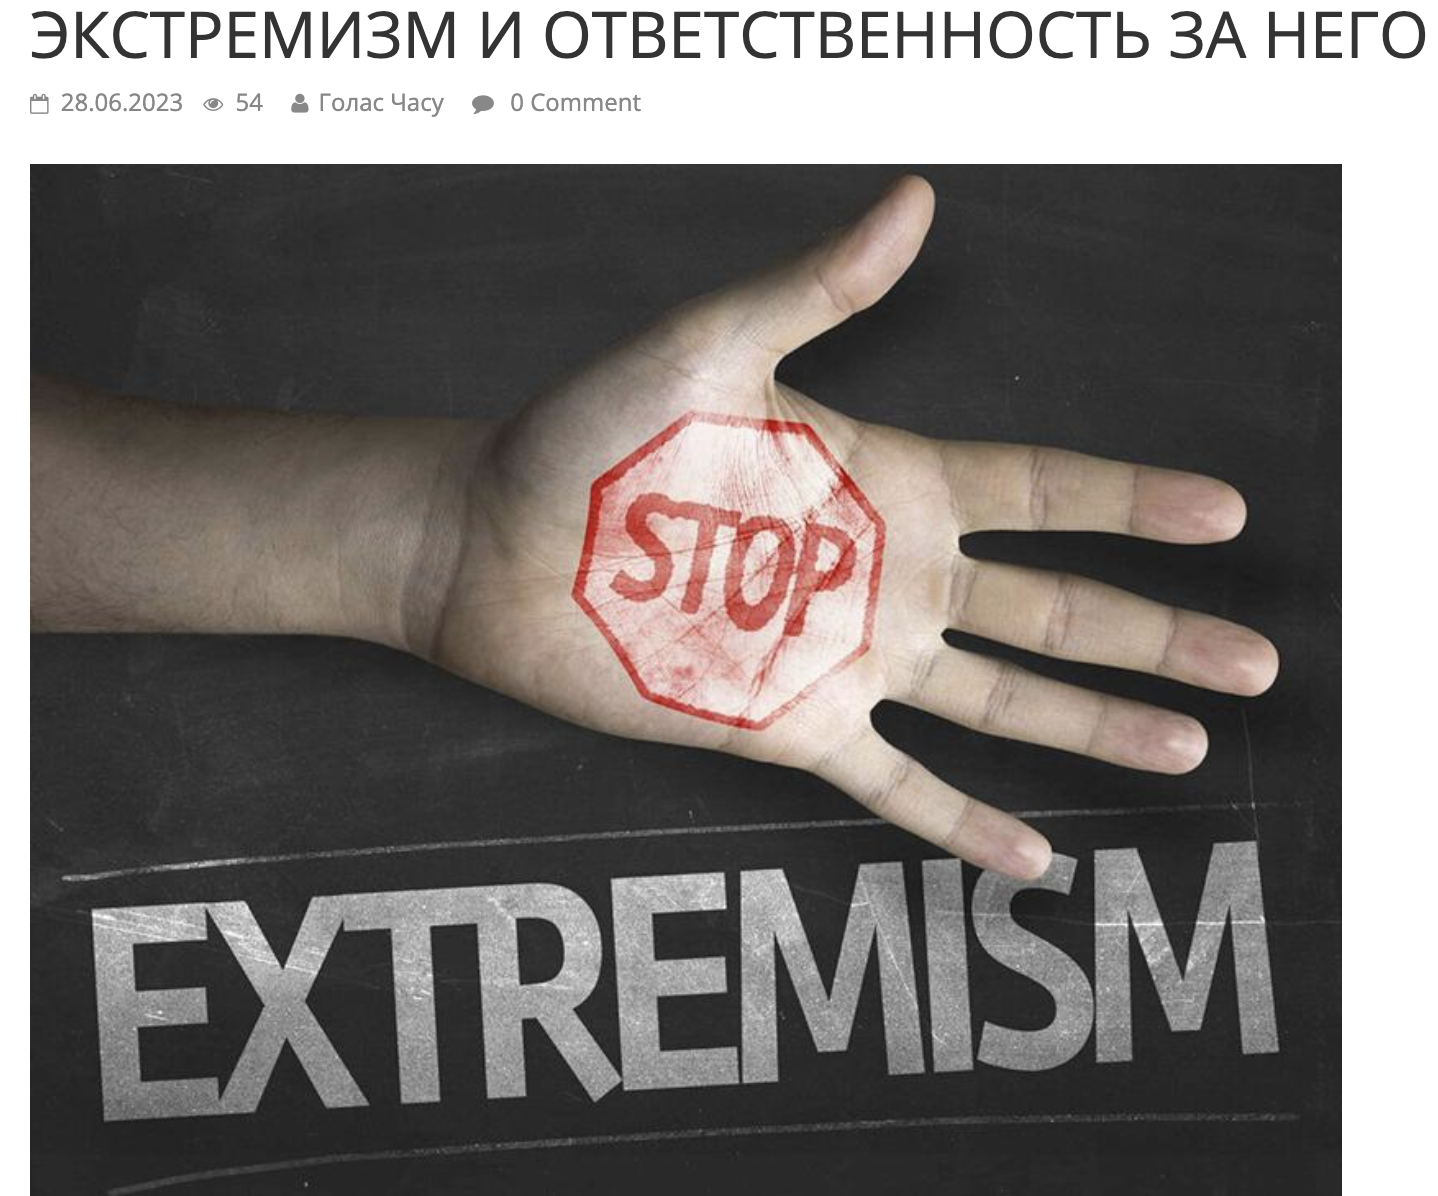 Заголовок статьи про экстремизм на сайте газеты. Скриншот с портала «Голас Часу»‎.